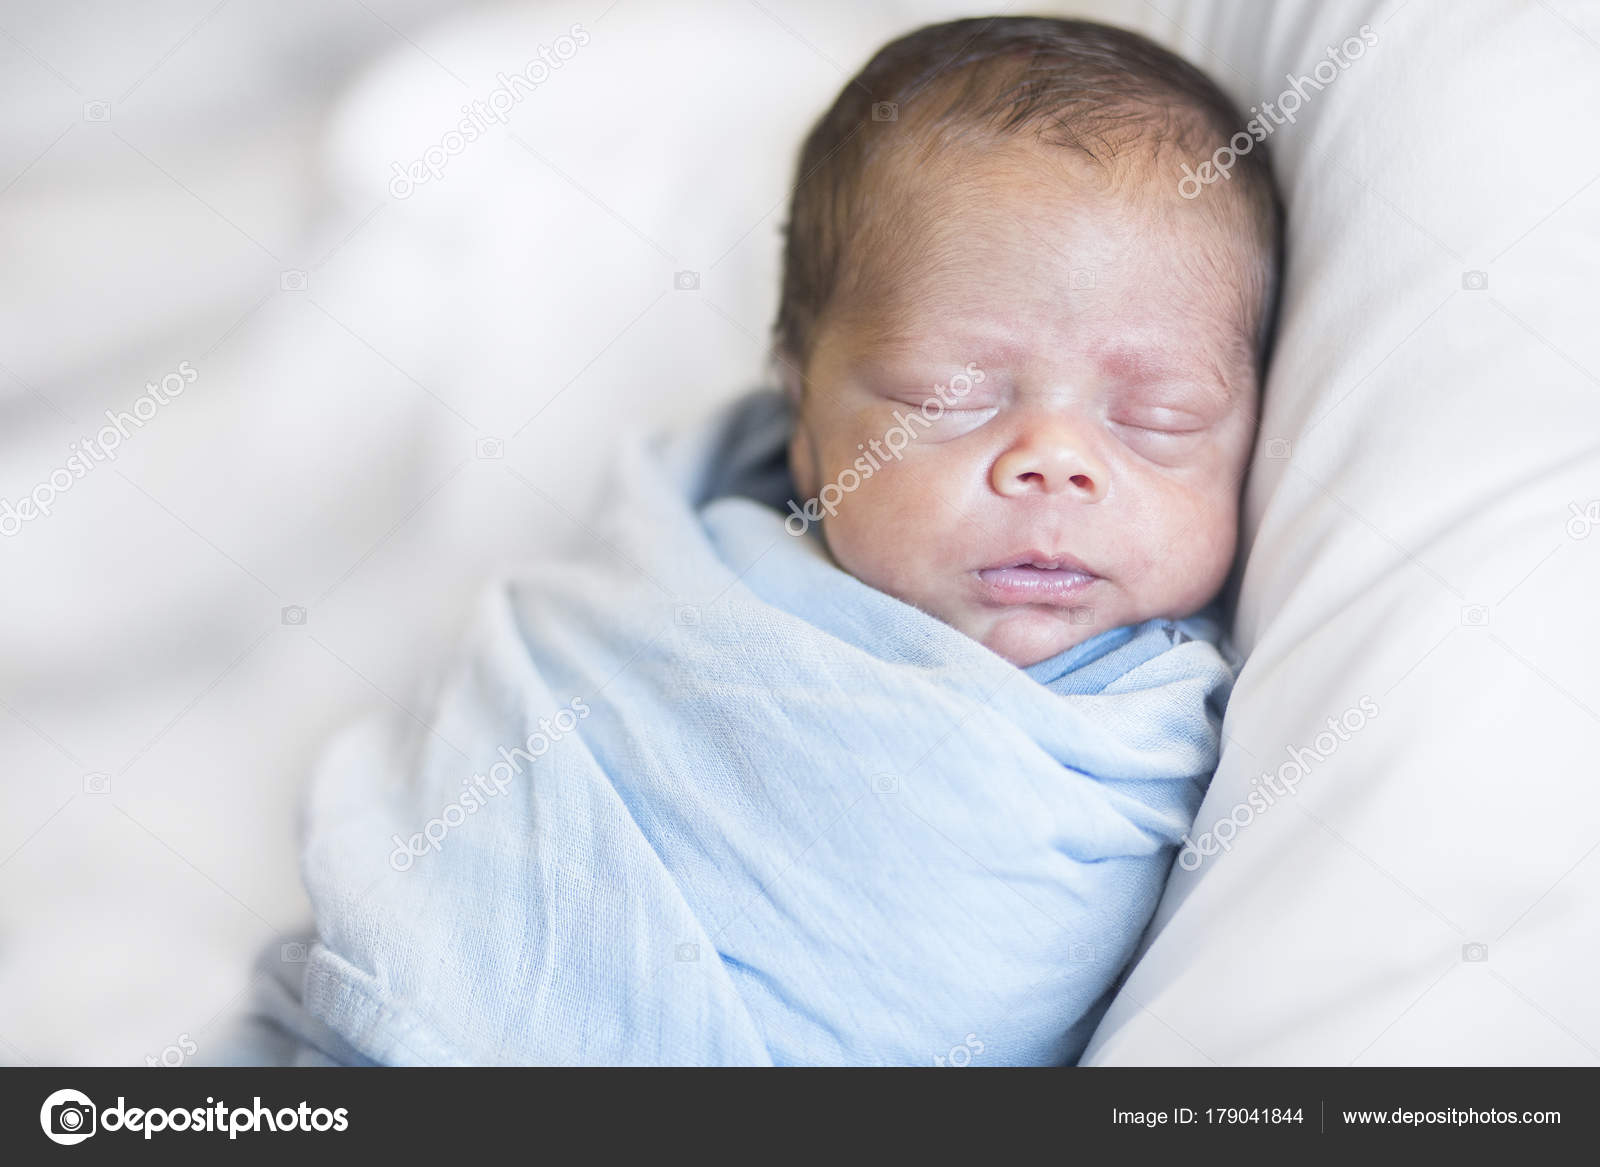 newborn baby boy blanket